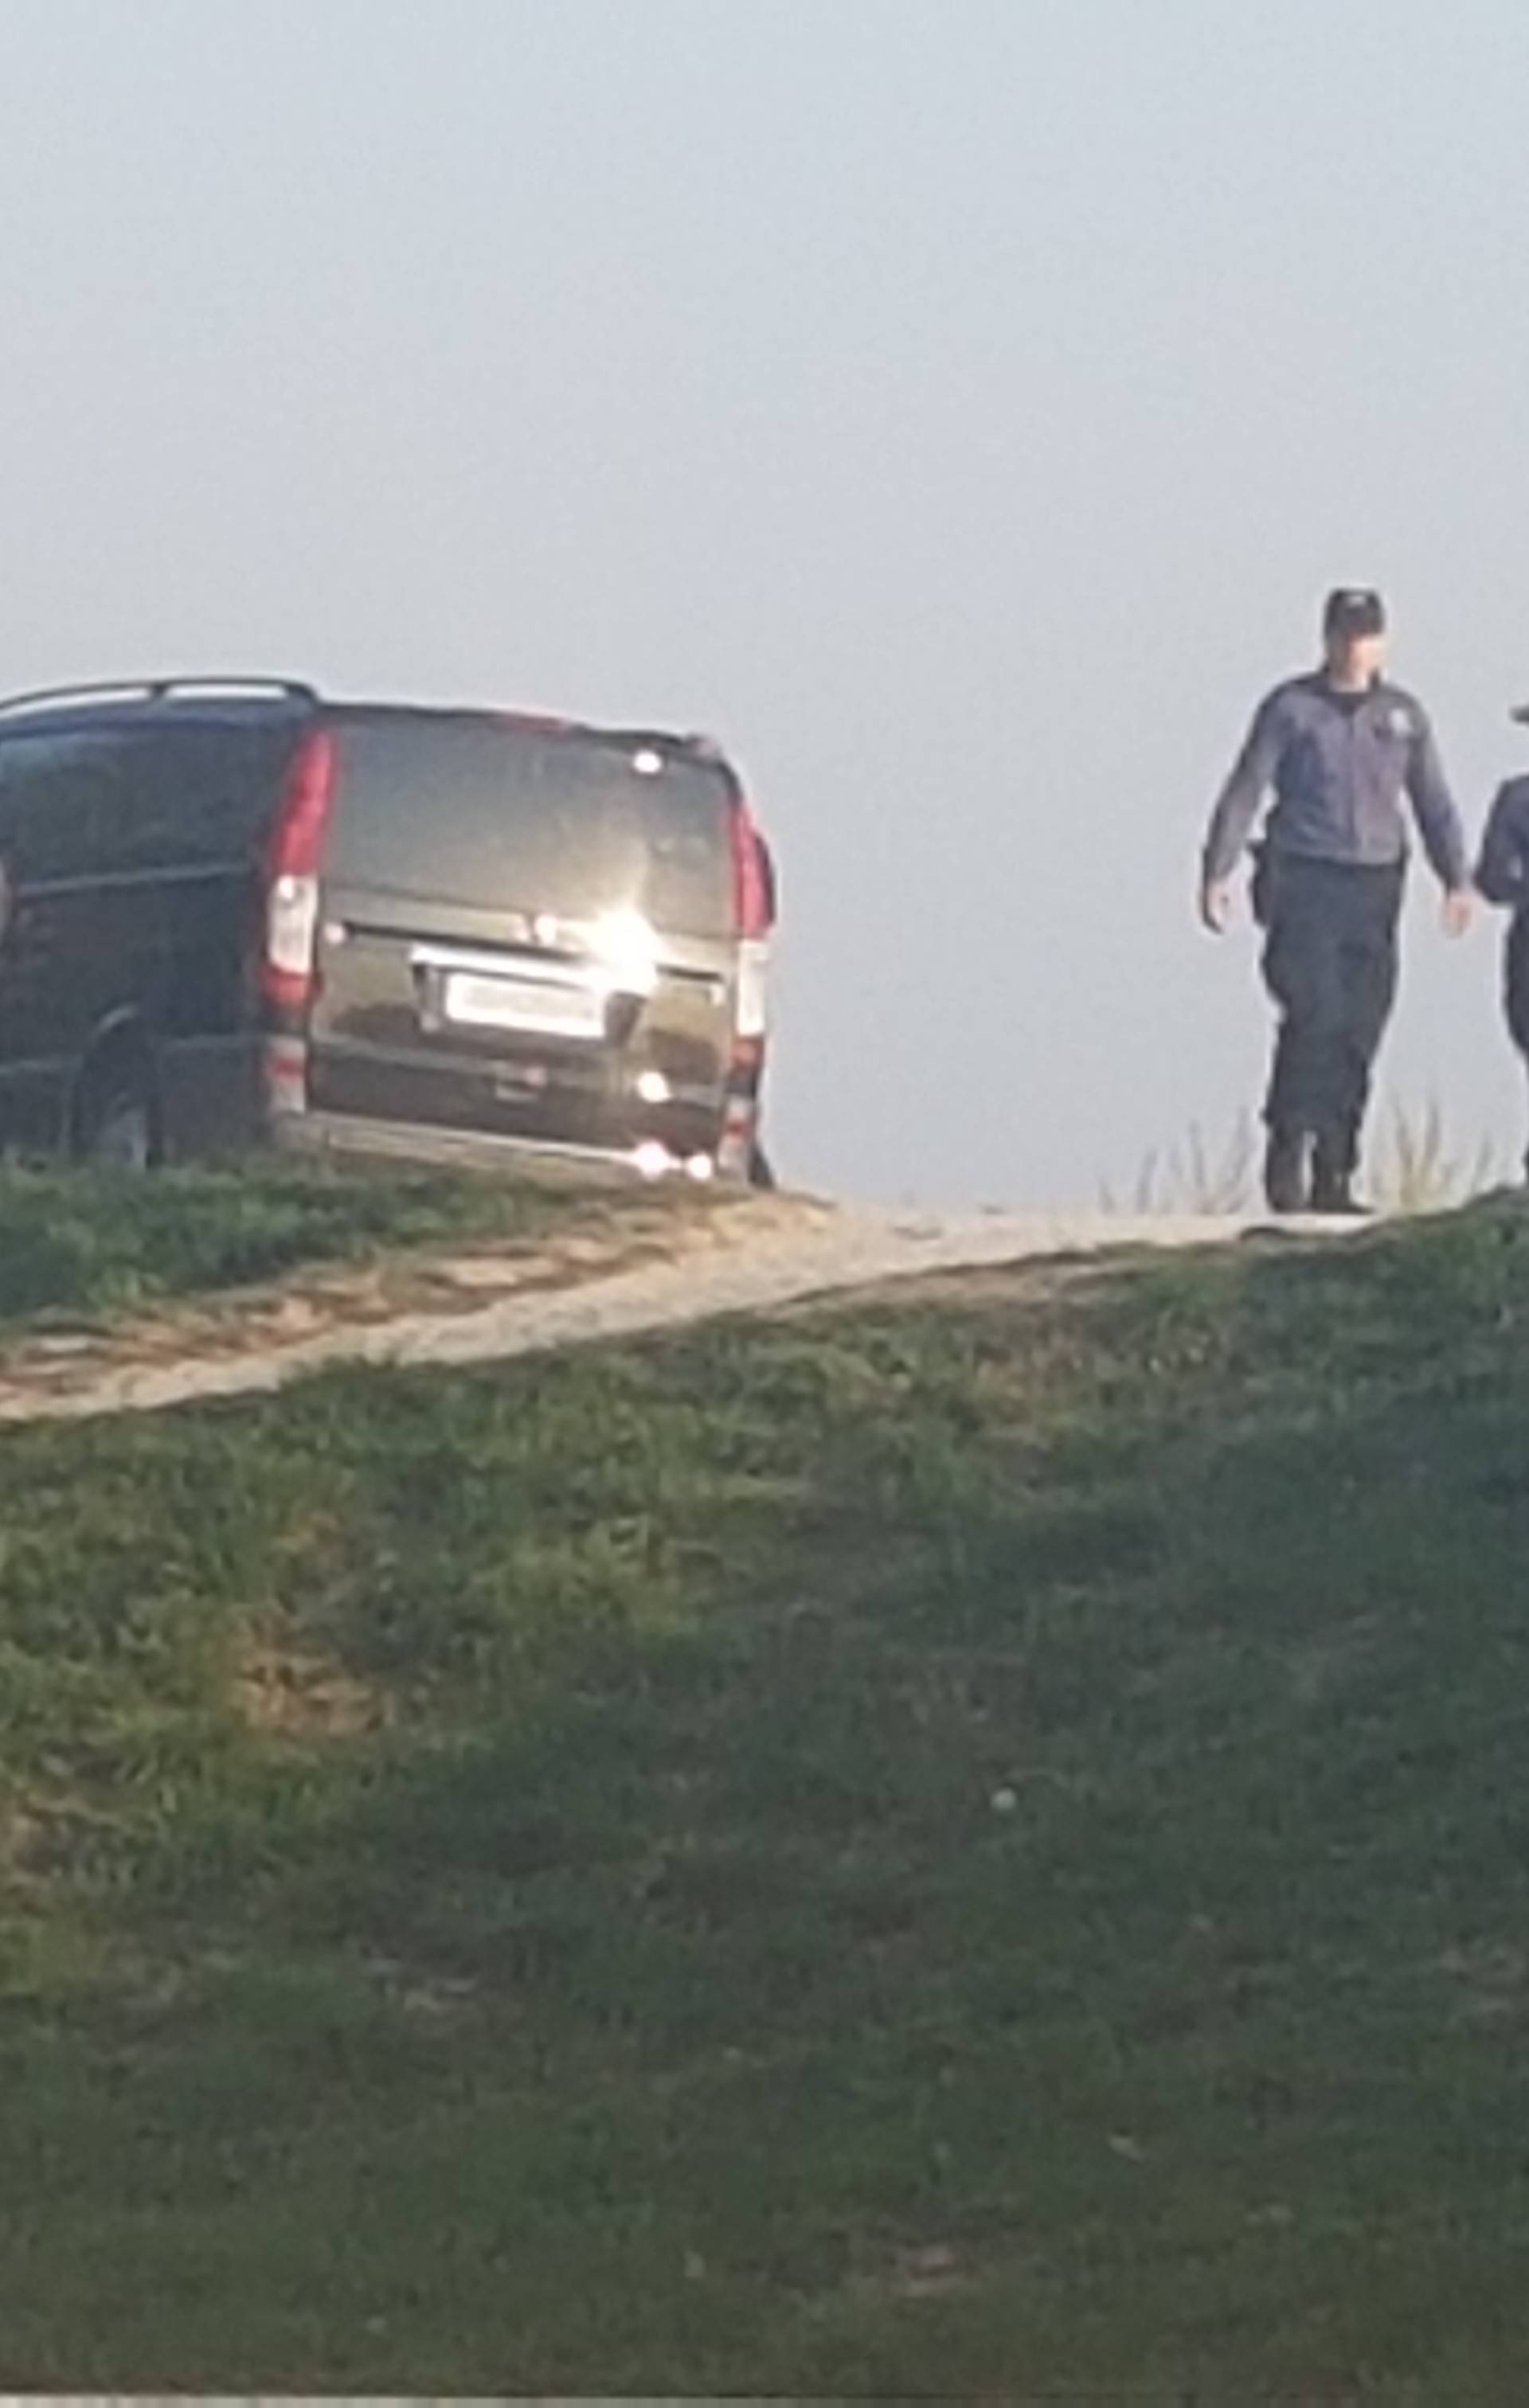 Užas u Zagrebu: U rijeci Savi pronađeno je tijelo muškrca